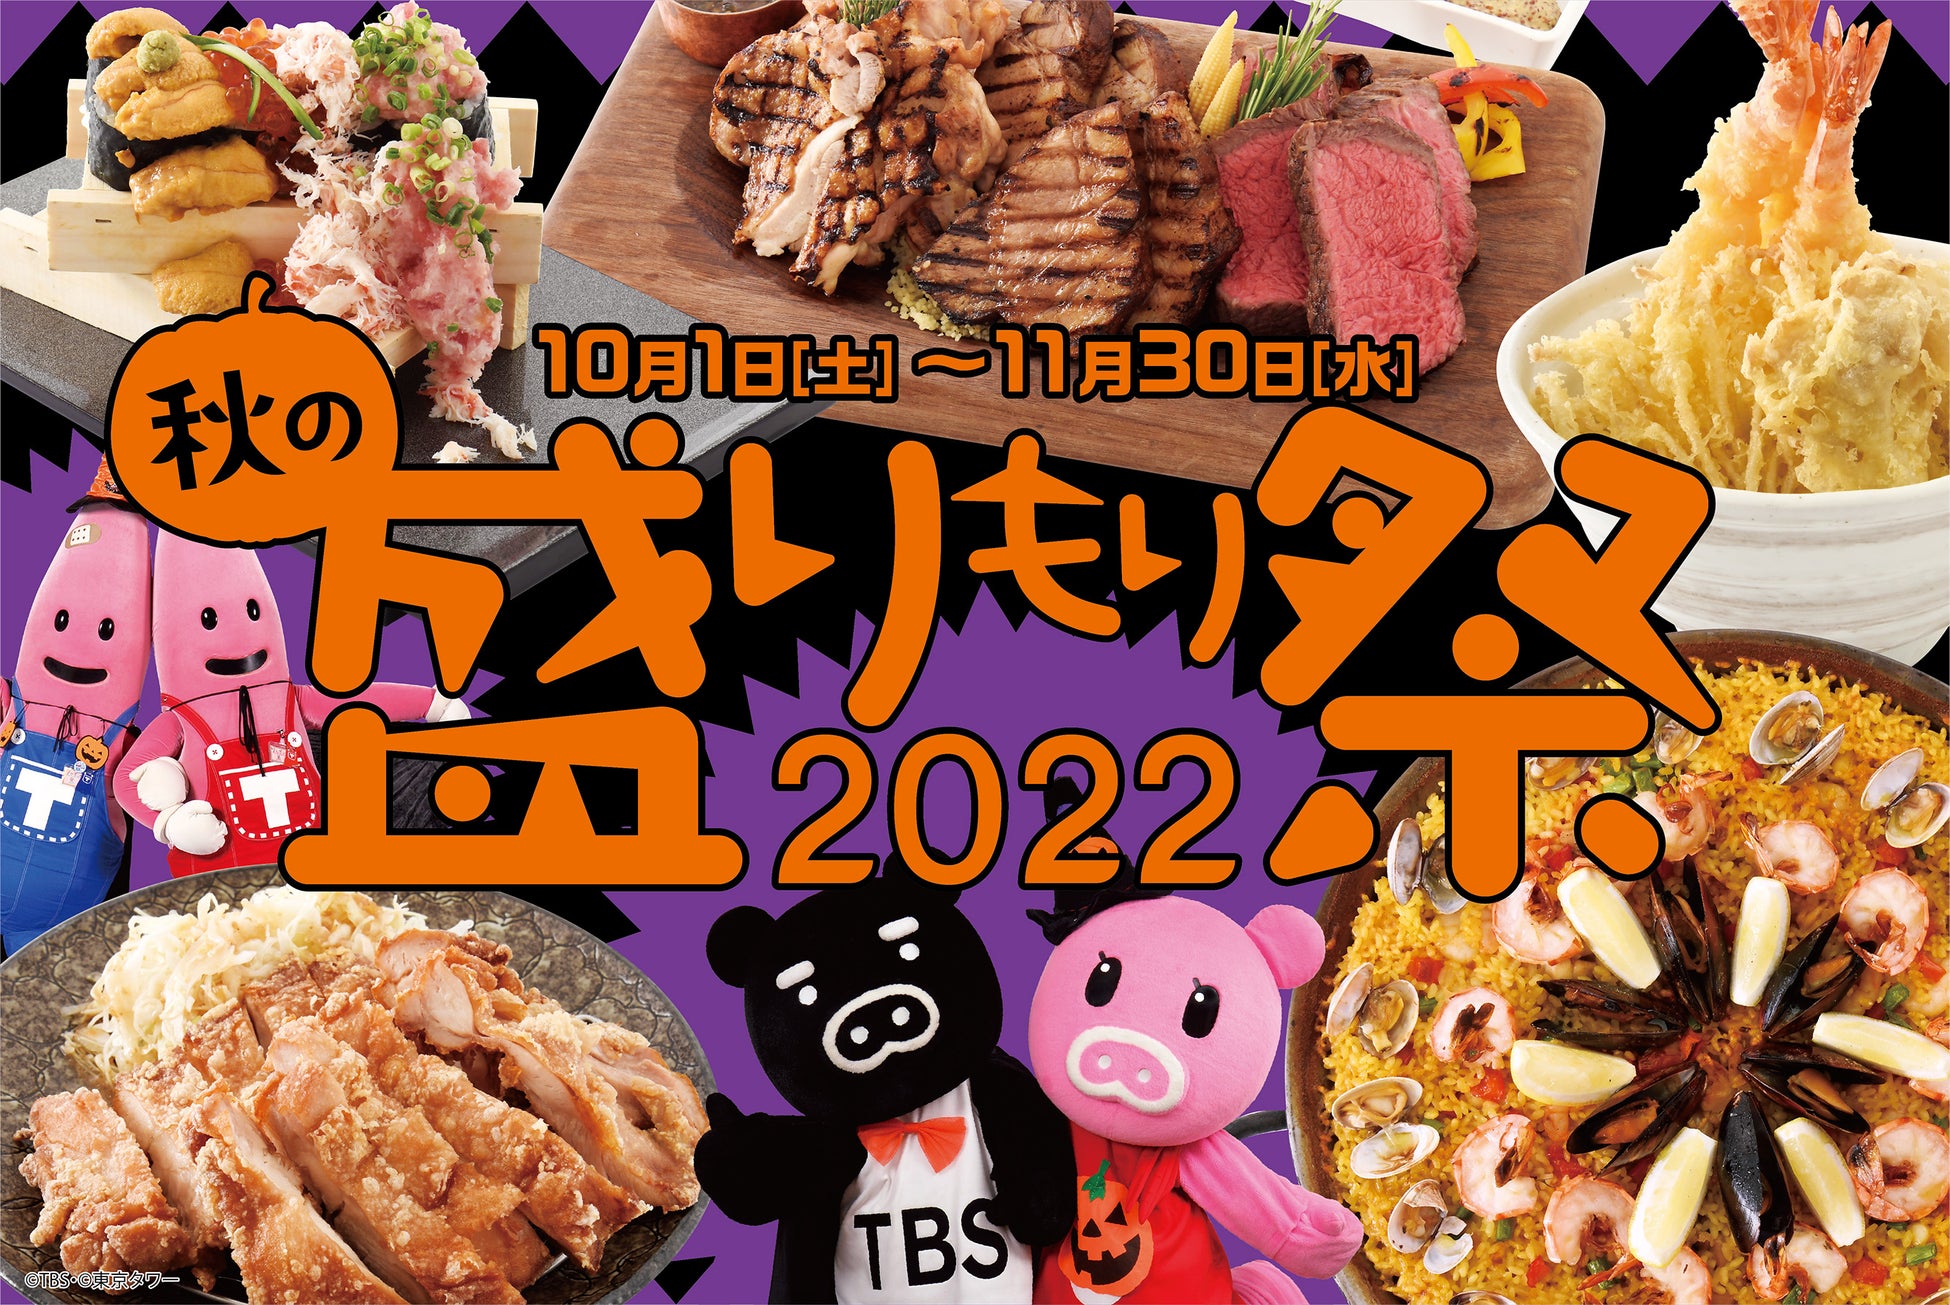 ＼盛-1グランプリ／「盛りもり祭2022」赤坂BizタワーSHOPS & DINING